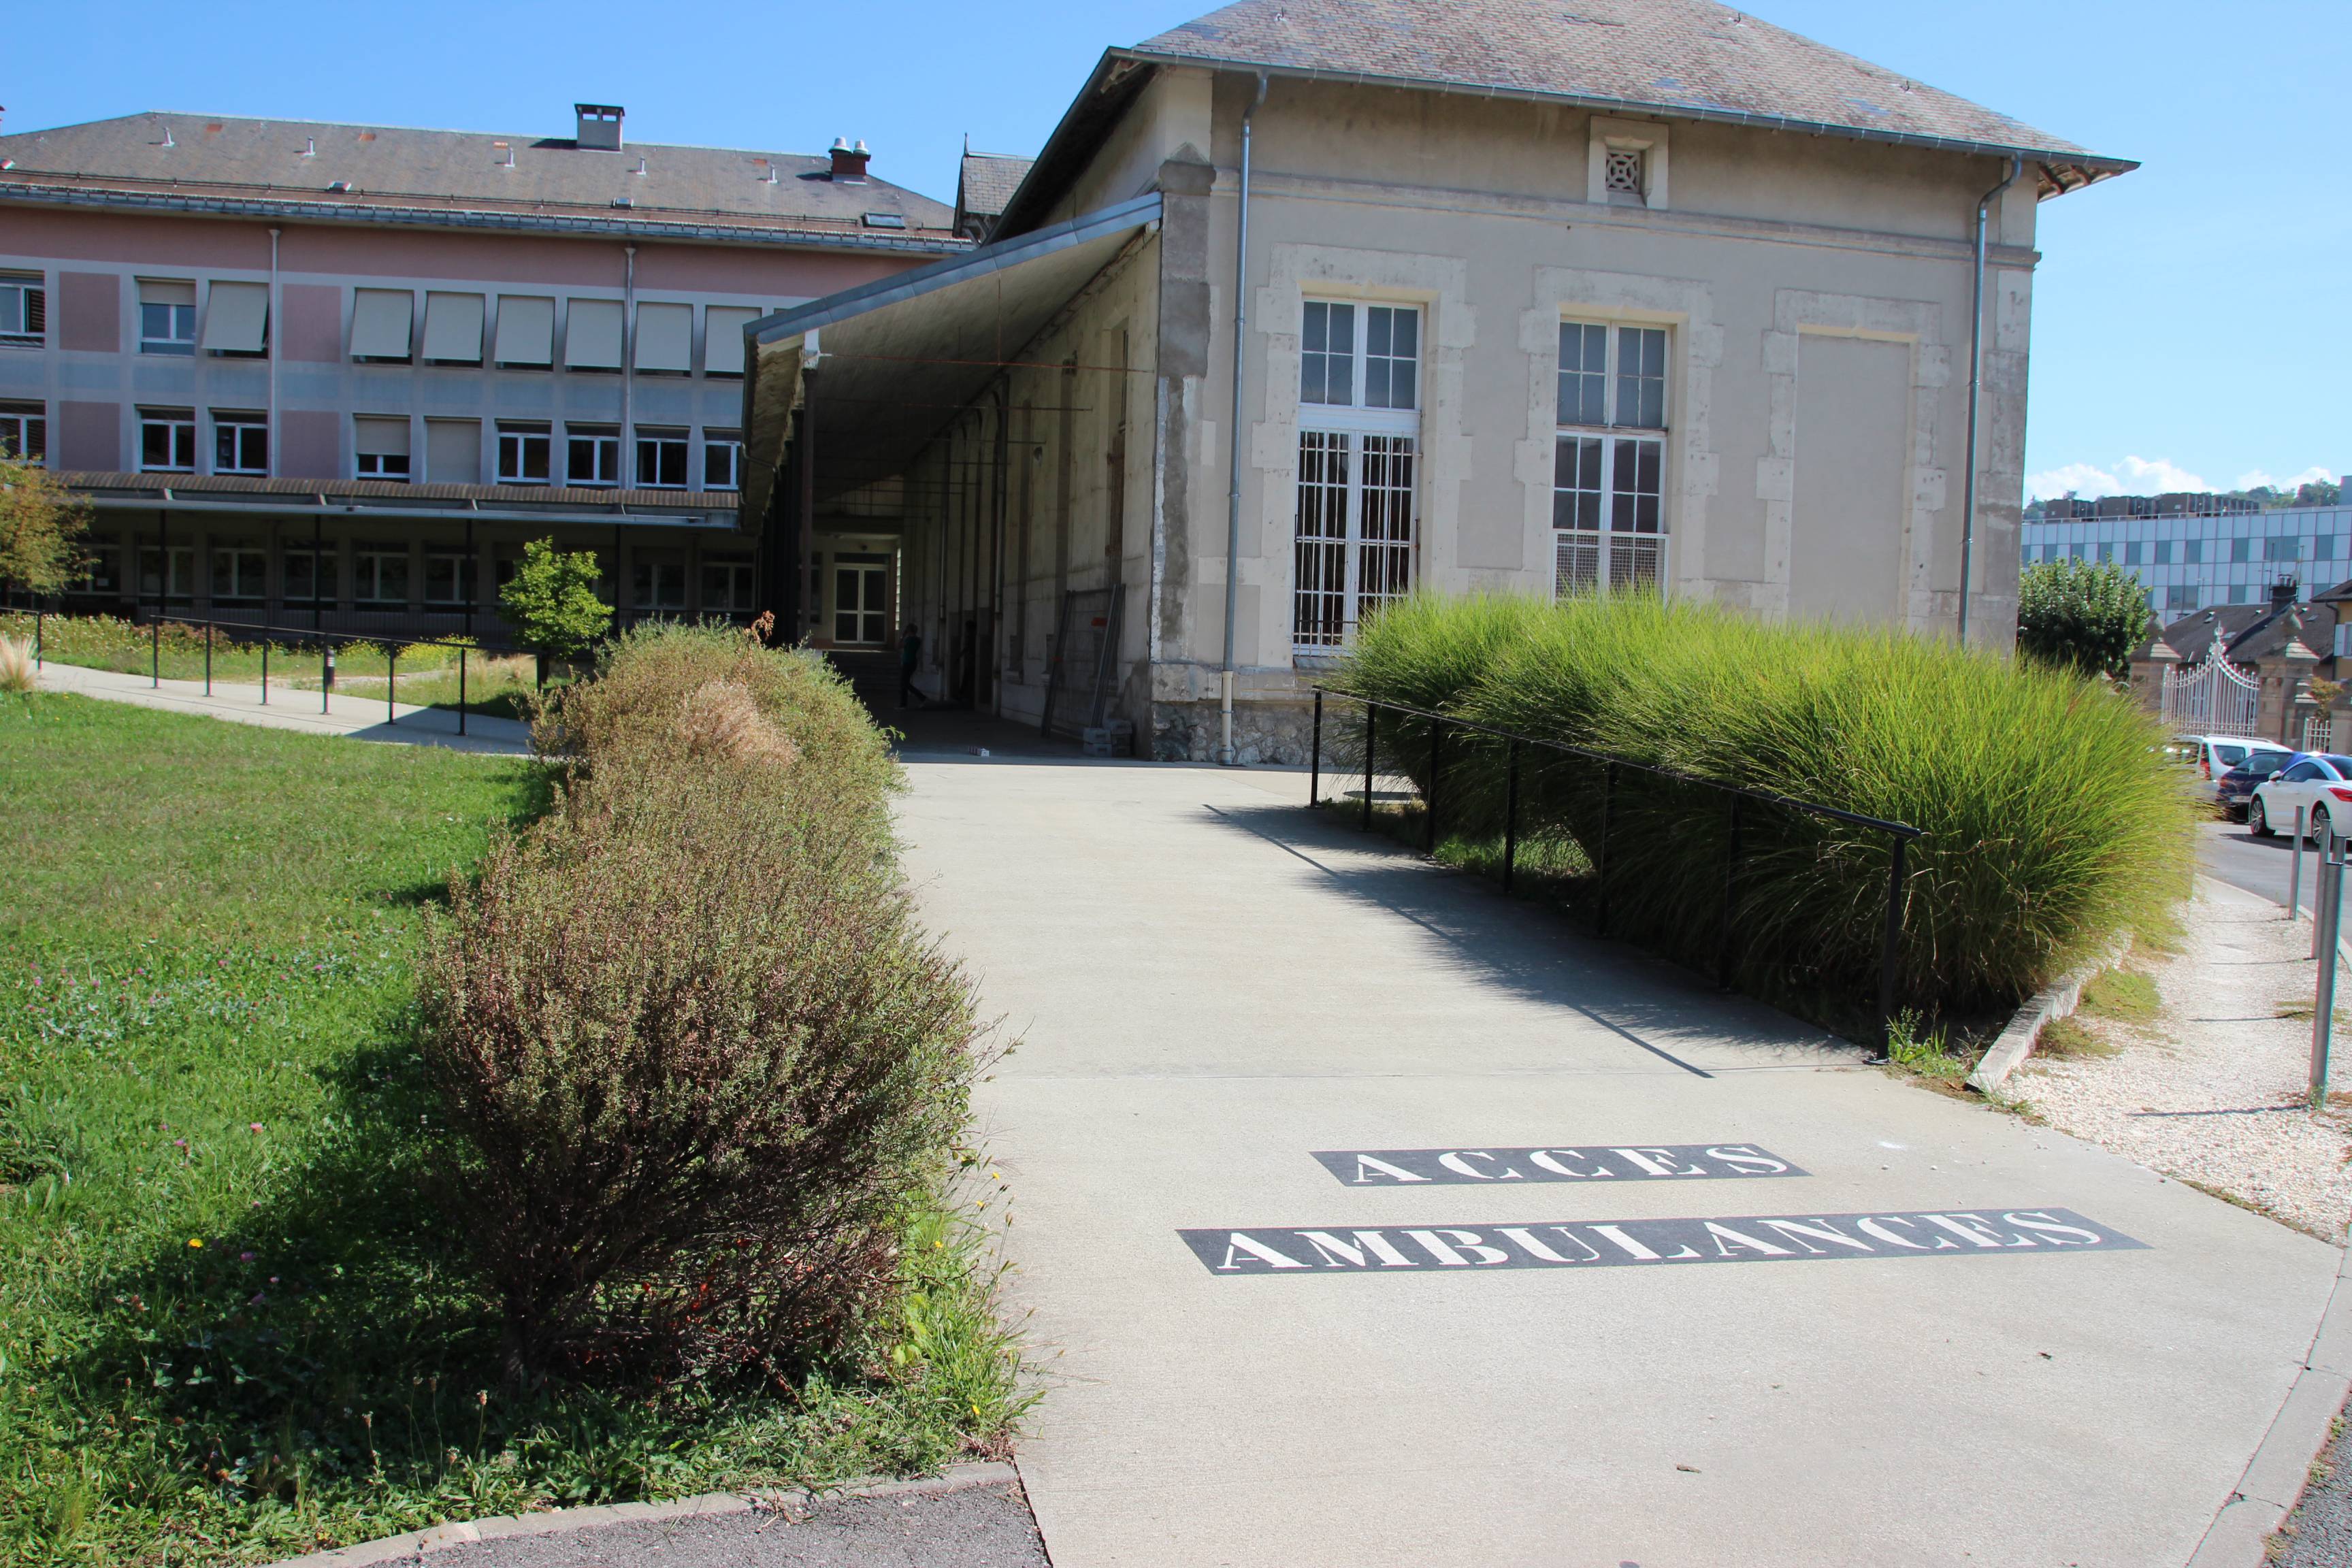 Hôtel Dieu - Centre hospitalier Métropole Savoie